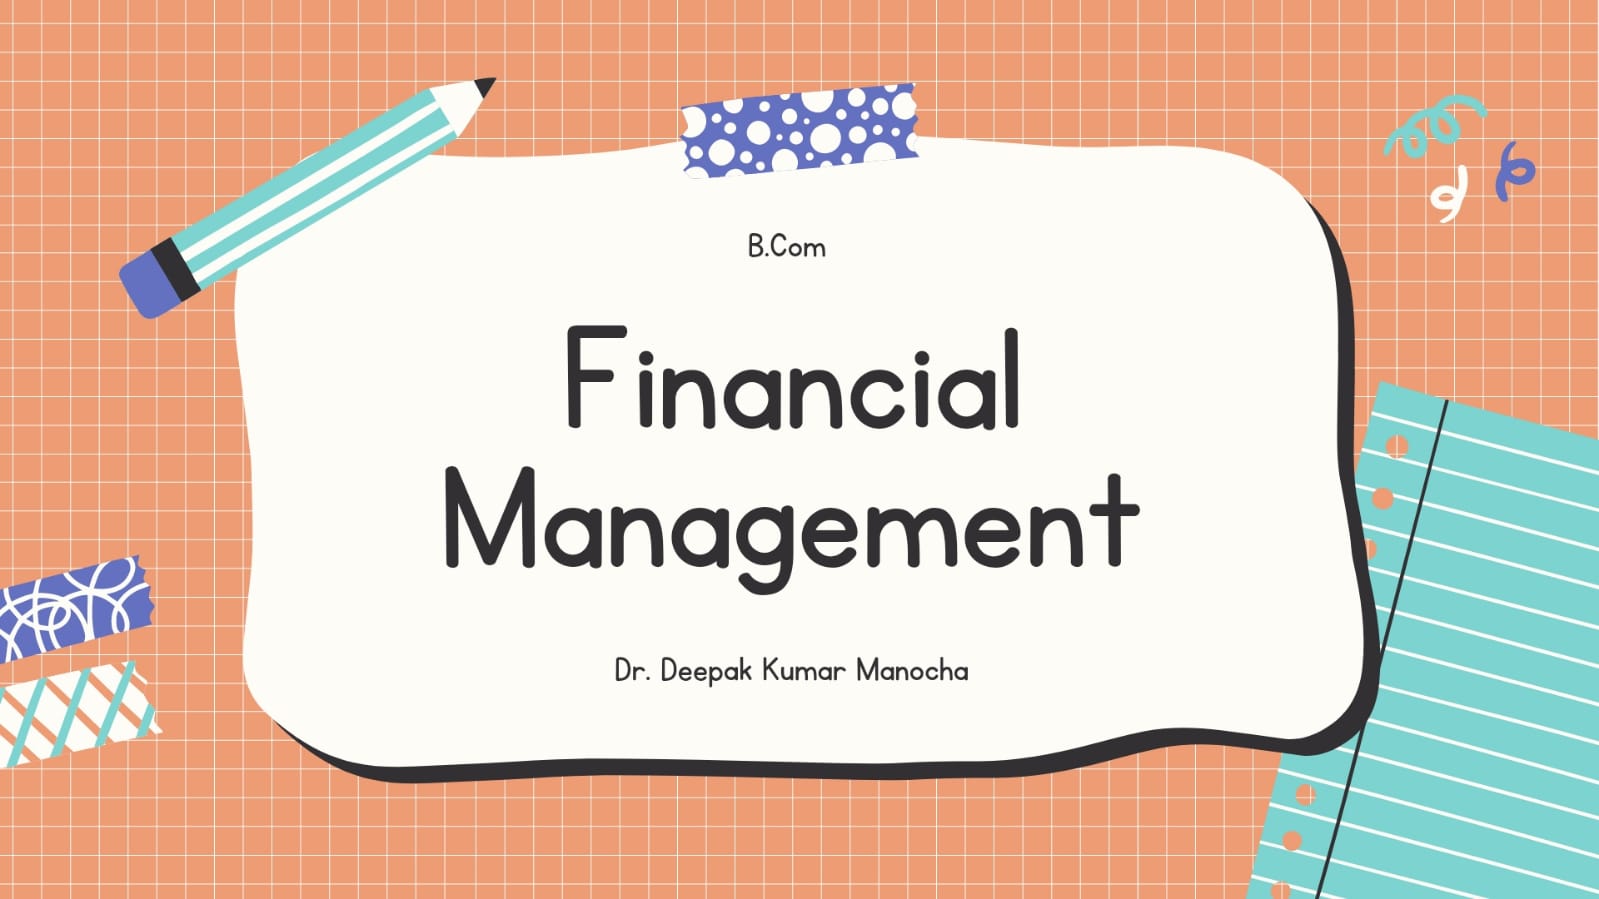 Financial Management (B.Com Voc)